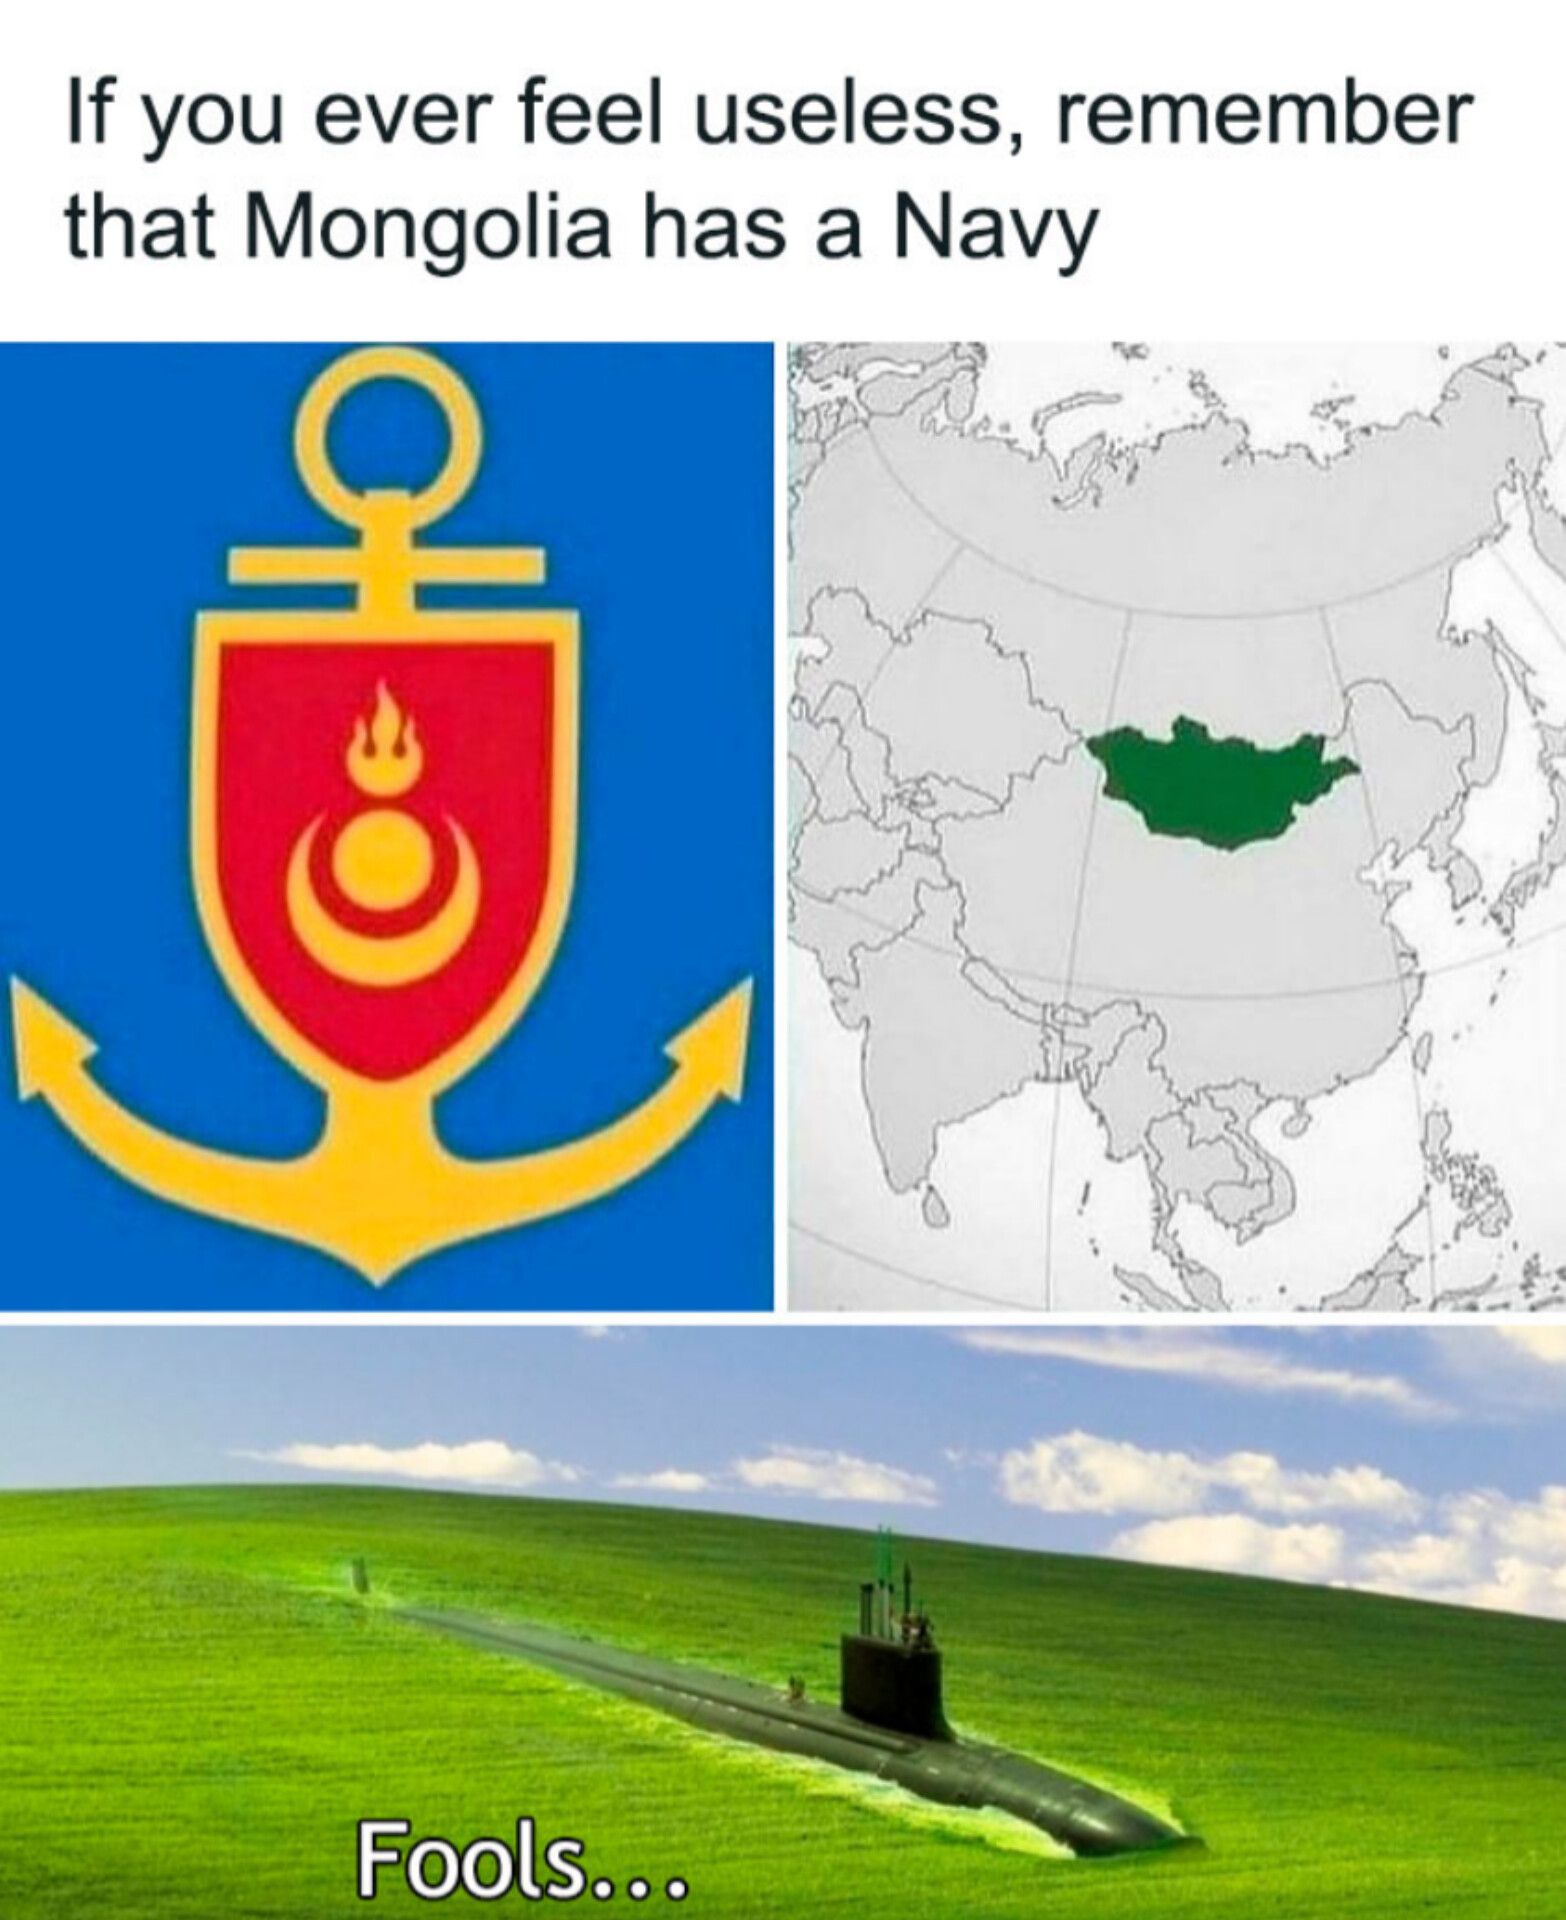 Mongolia's navy